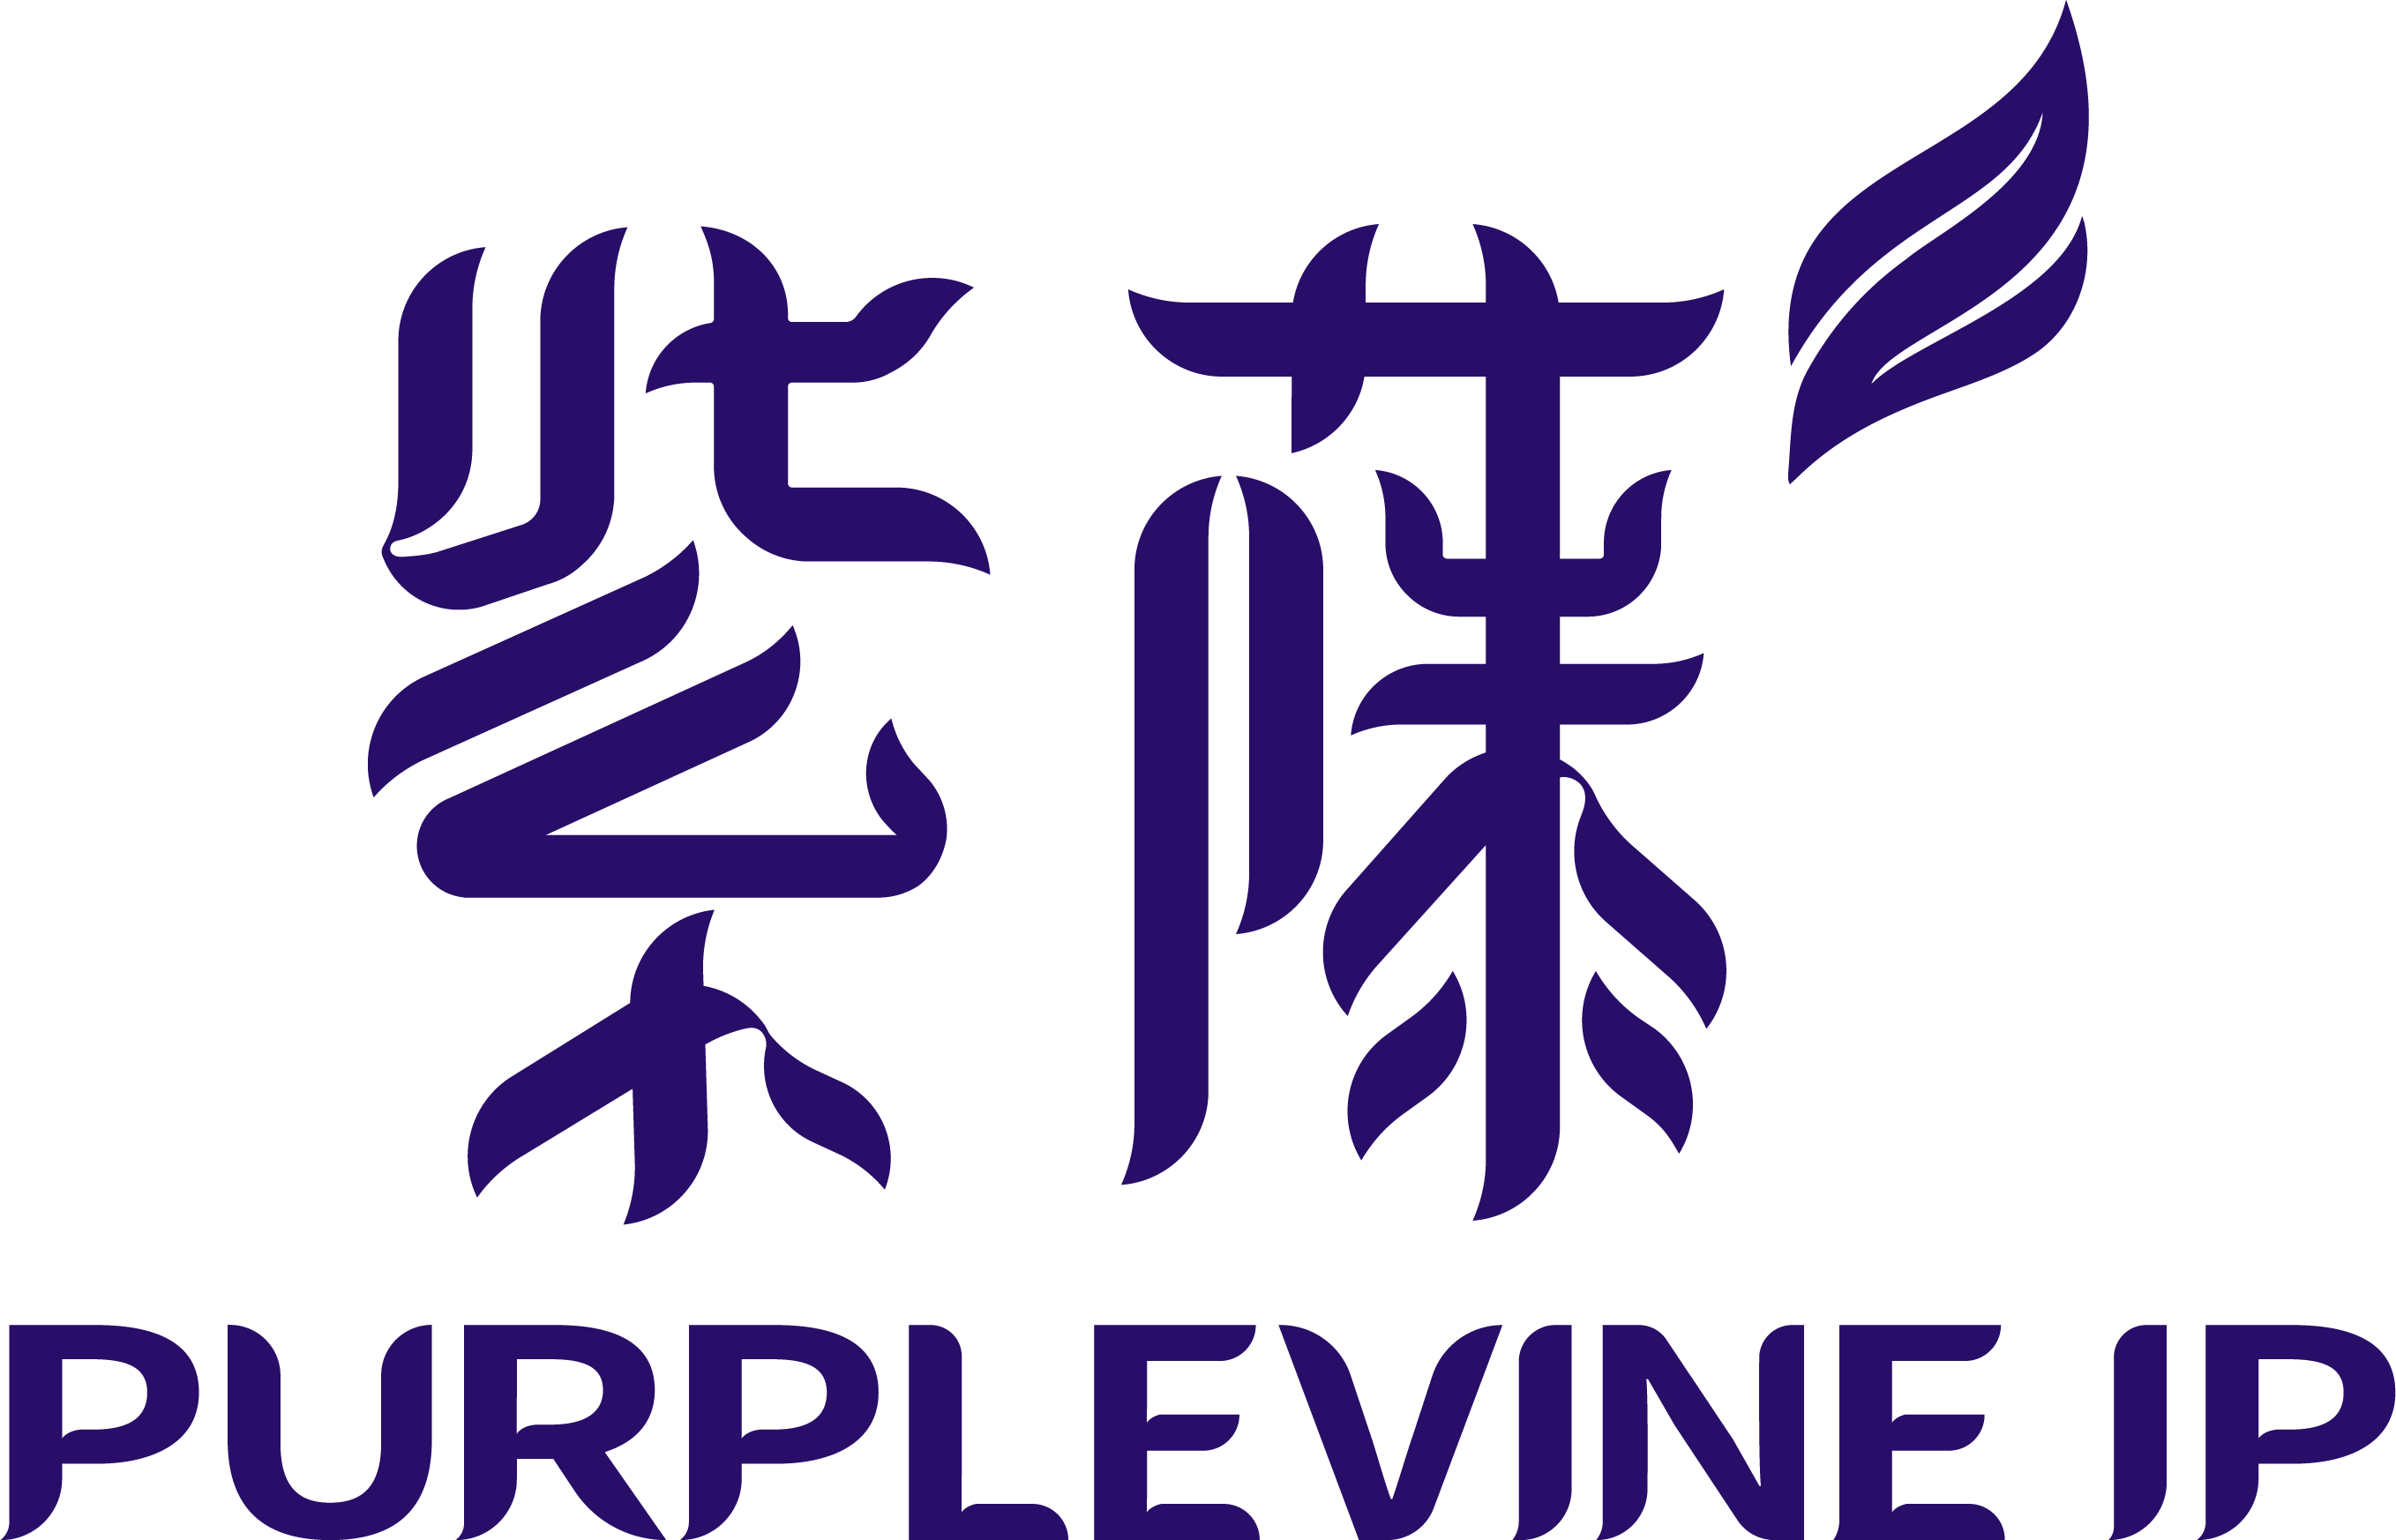 Purplevine